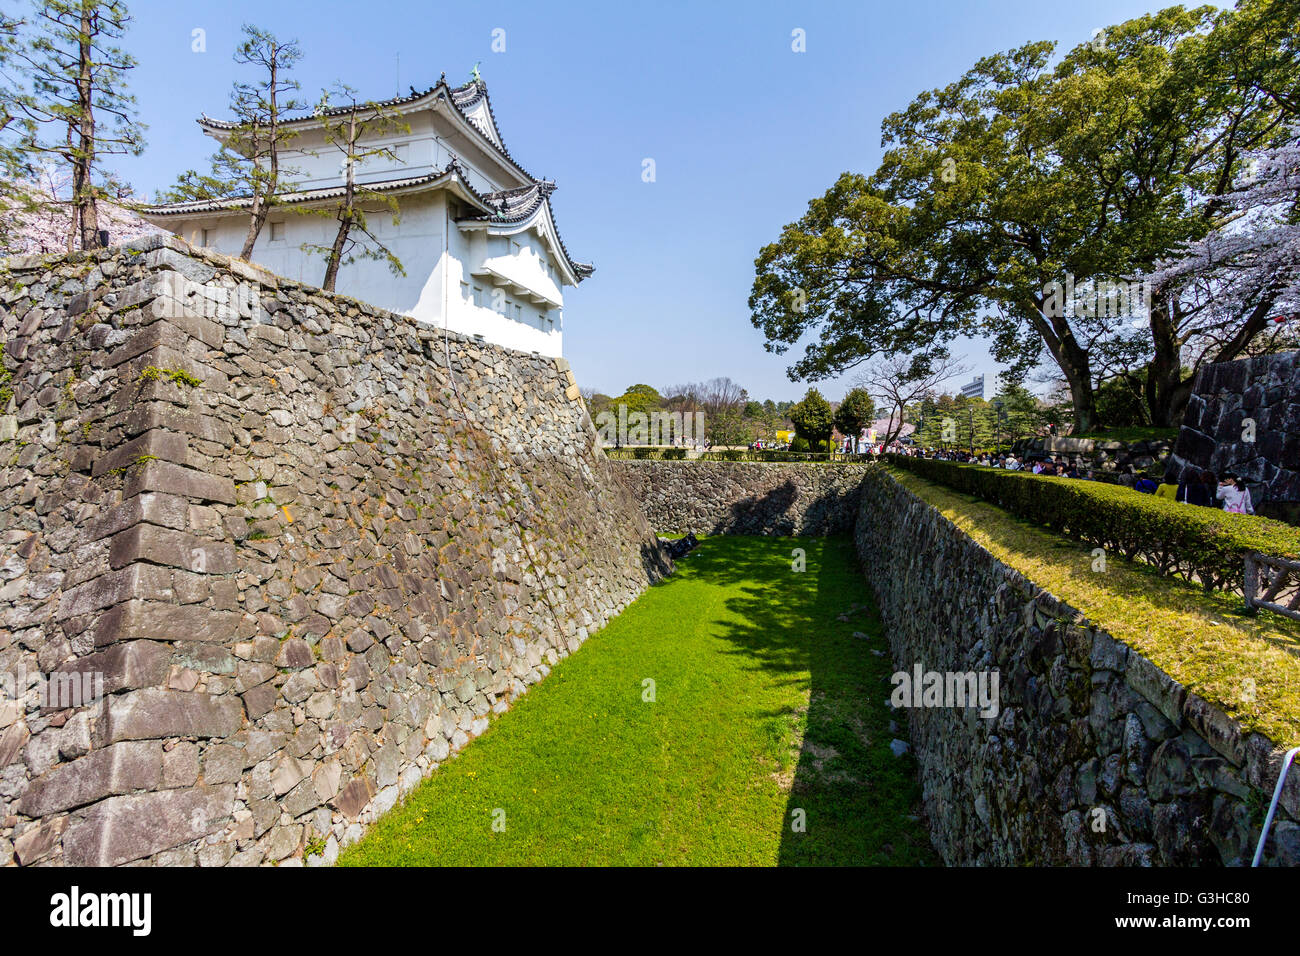 L'angolo sud est torretta, Tatsumi yagura, sulla parte superiore del muro di pietra base con fossato asciutto. Il Castello Nagoya, Giappone. La primavera con cielo blu. Foto Stock